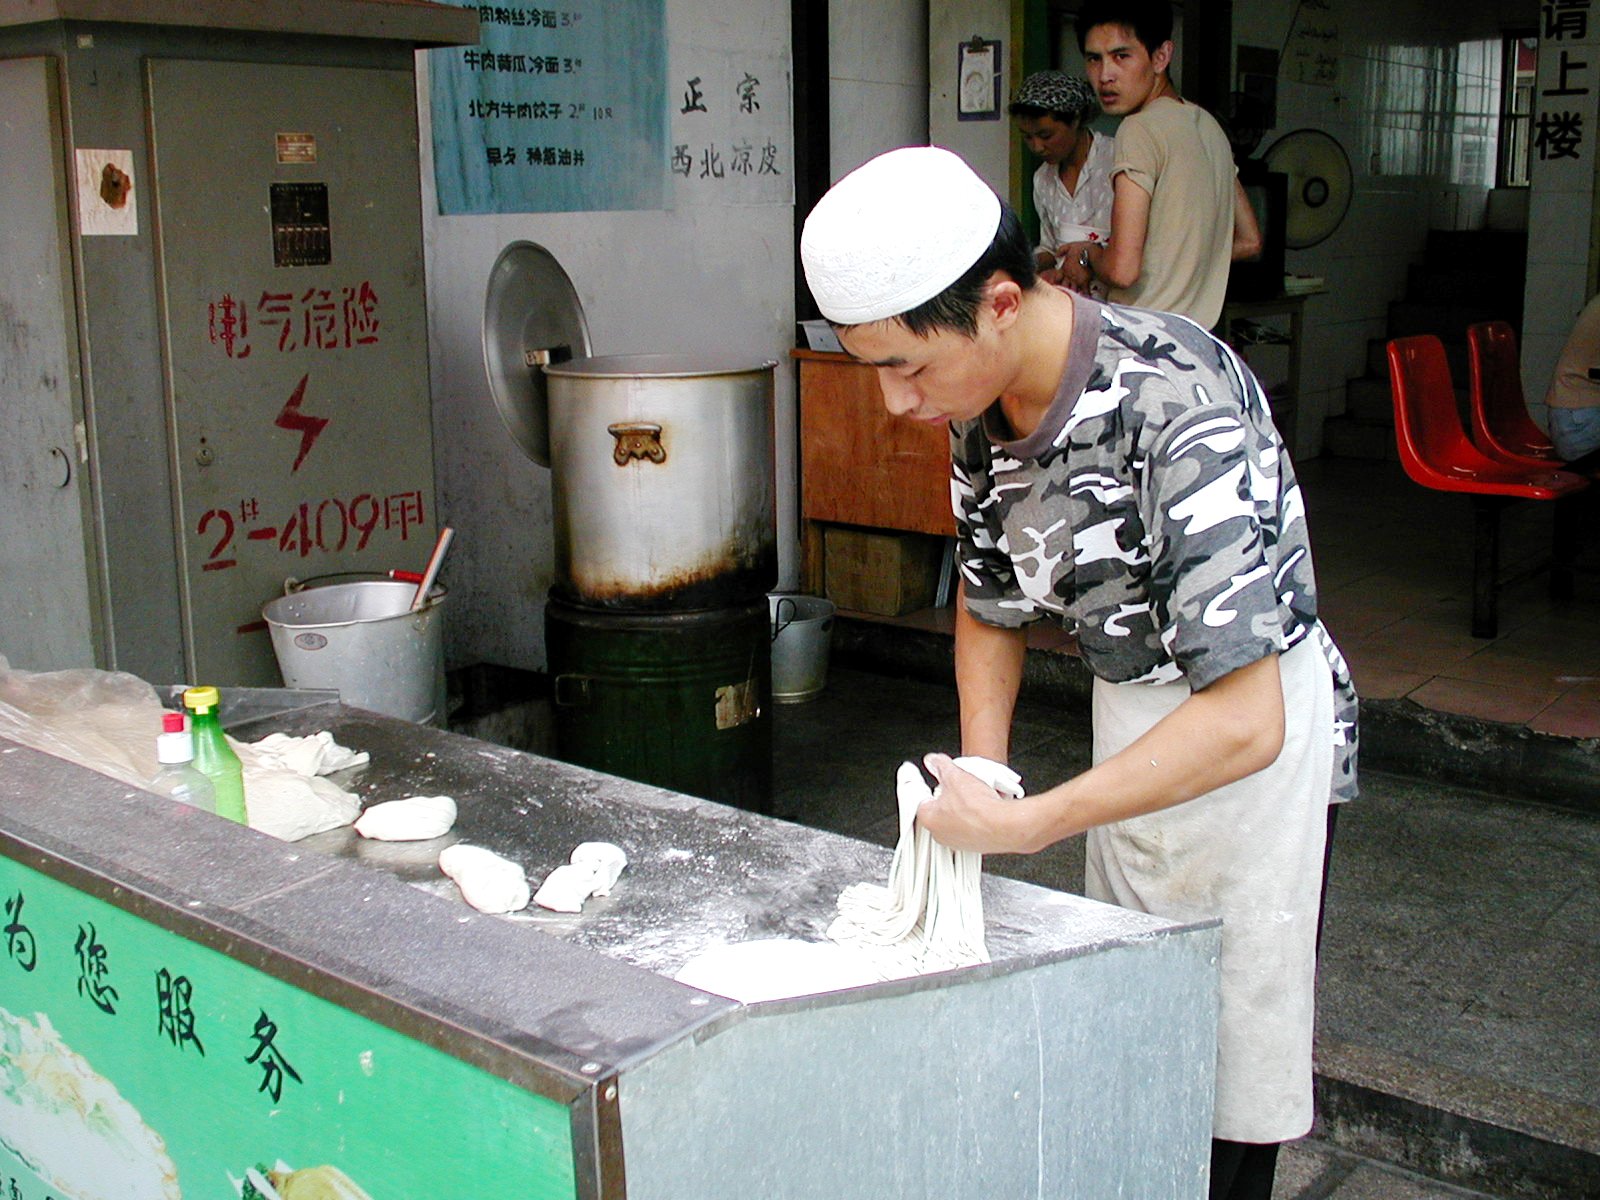 蘇州のラーメン屋さん、拉麺